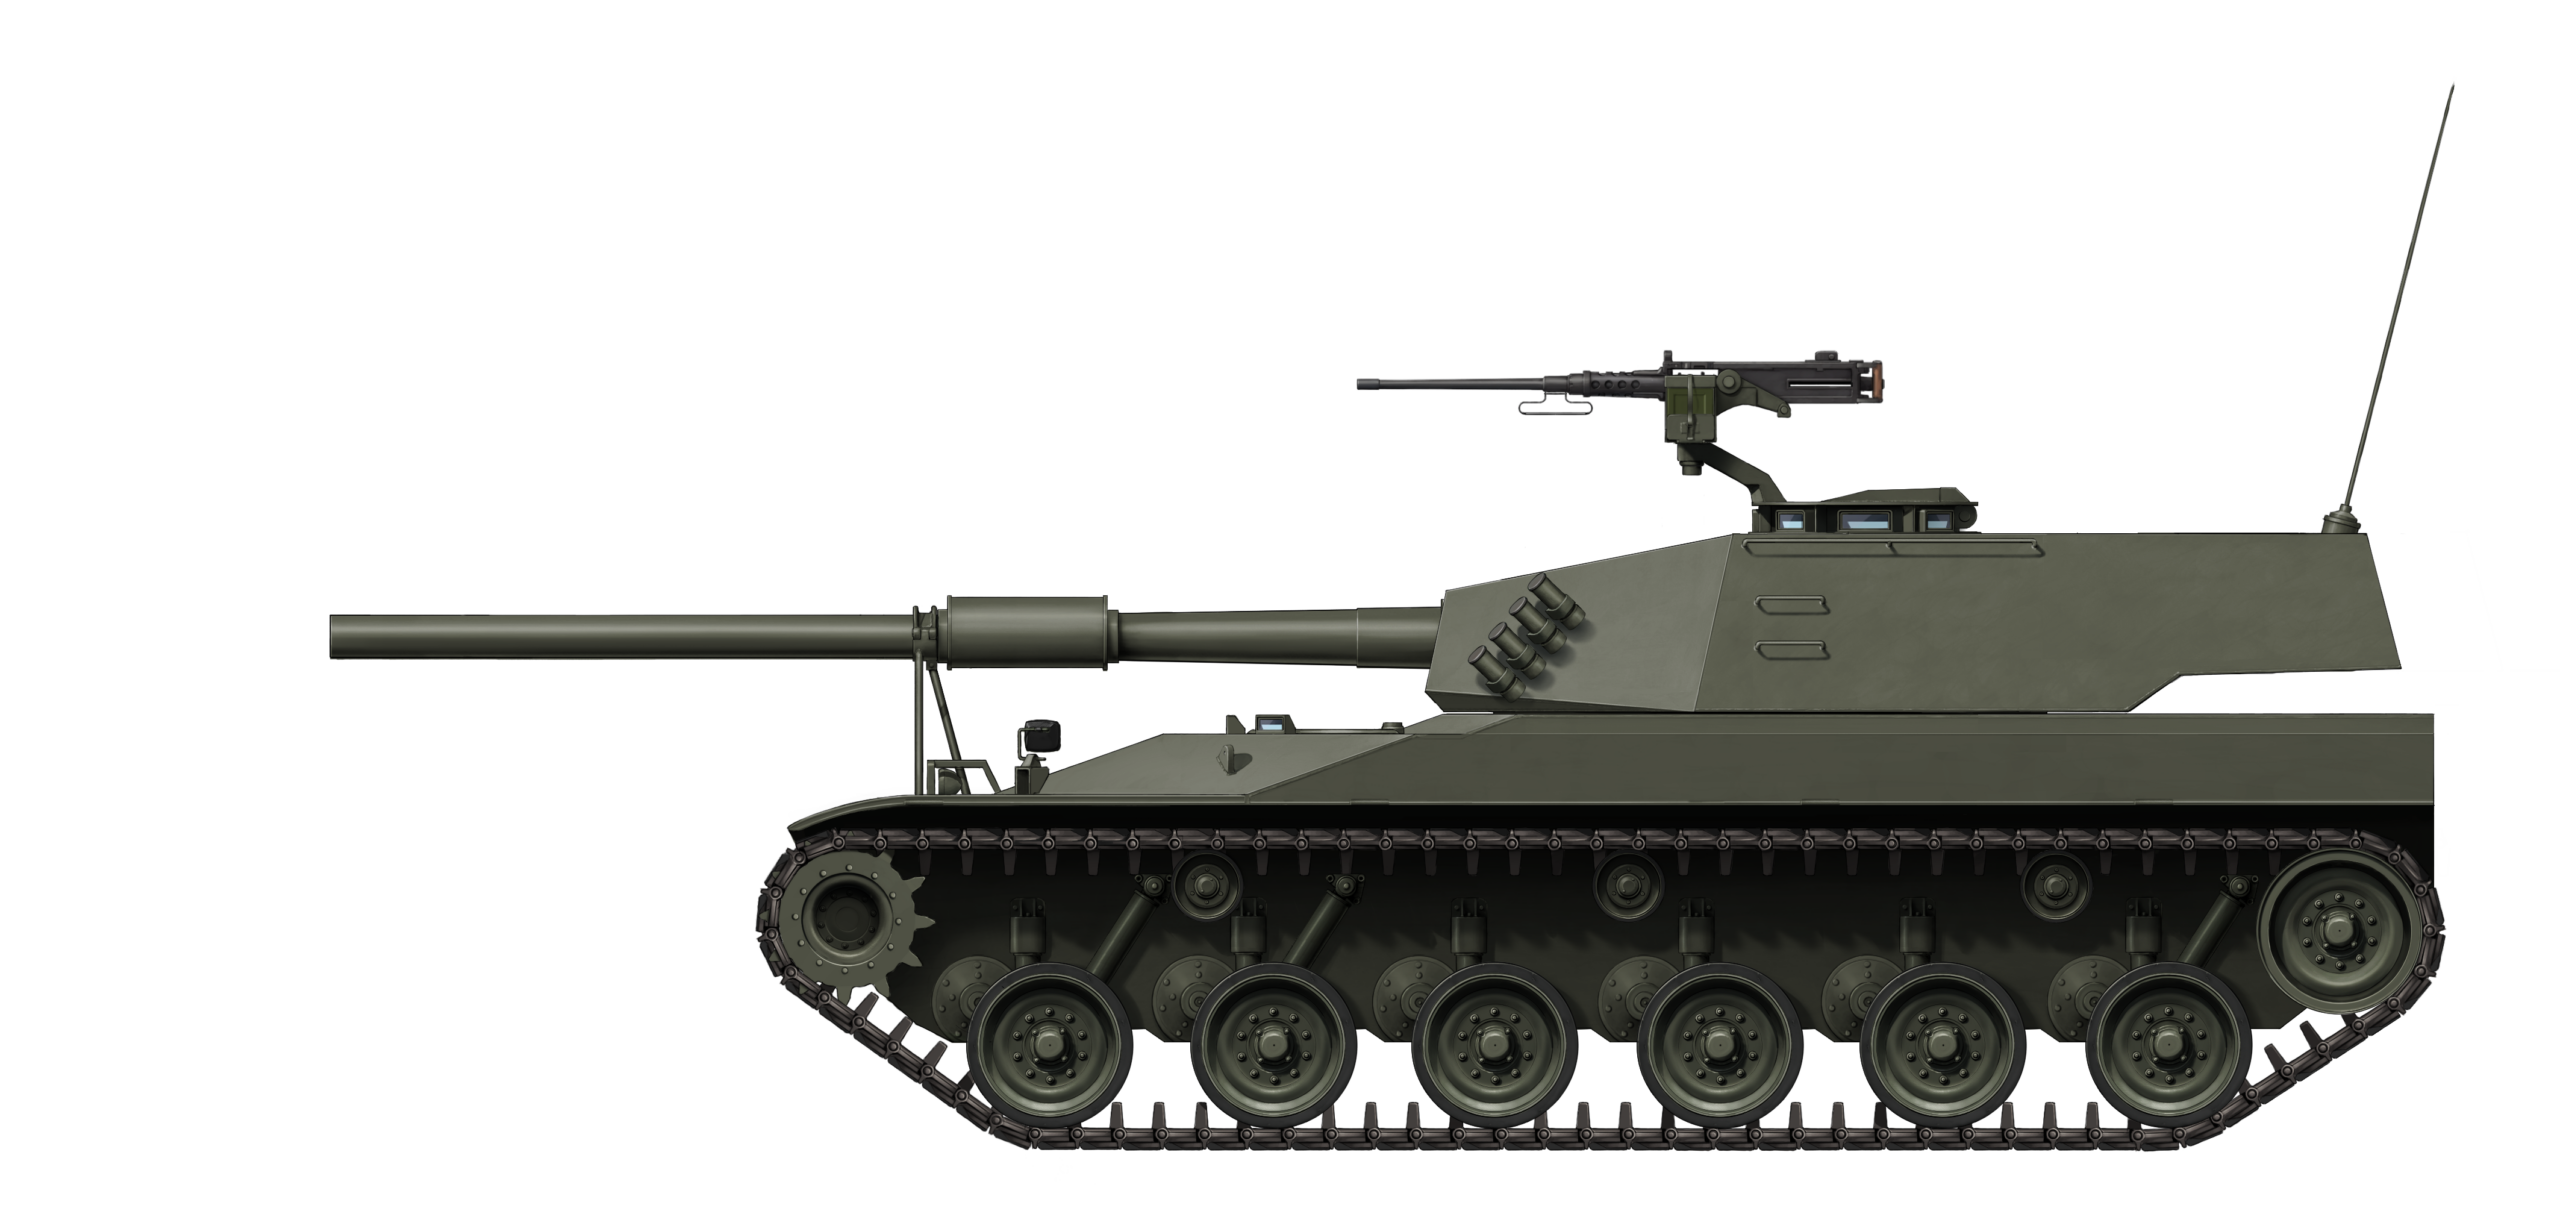 MB 3 Tamoyo танк. Тайп 57 танк блиц. Bernardini MB-3 Tamoyo.